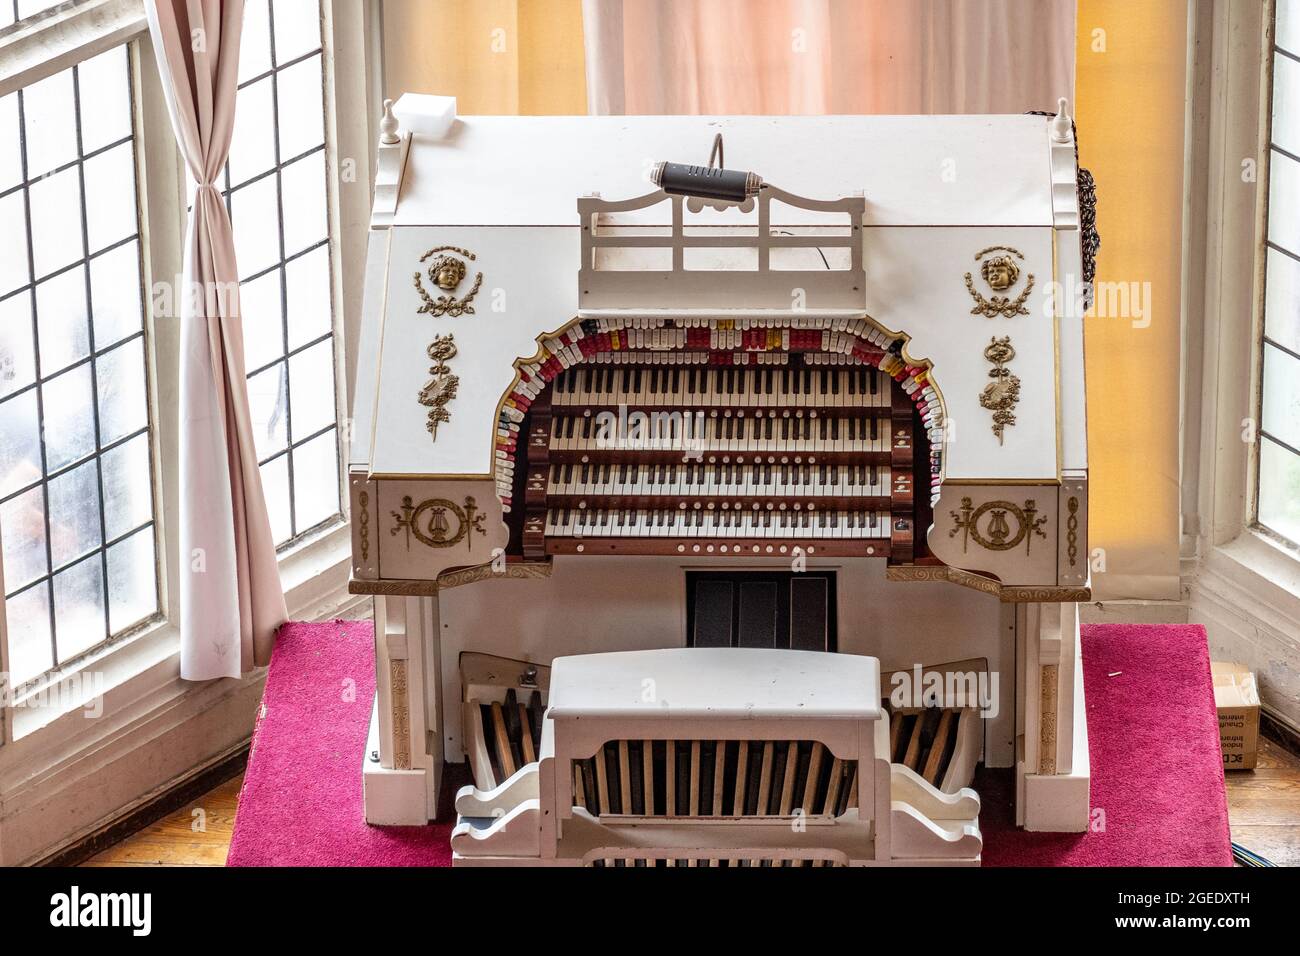 Instrument de musique de clavier d'orgue à Casa Loma. Casa Loma est un château gothique d'architecture revival qui est une attraction touristique majeure dans la ville de Tor Banque D'Images